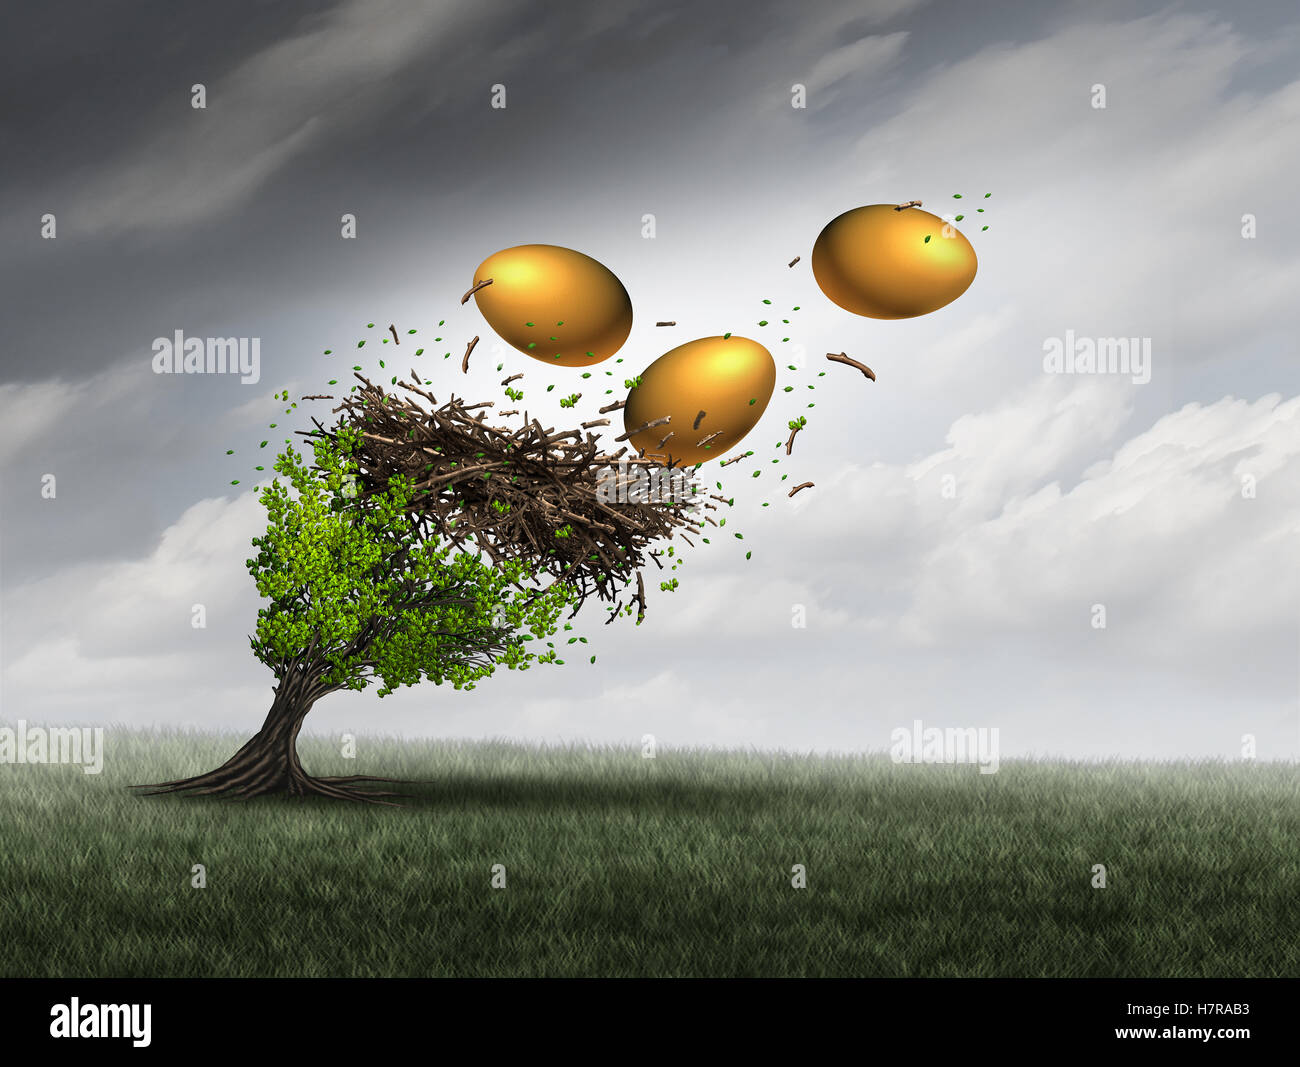 Fondo de jubilación concepto de crisis como un árbol en peligro con nidos y huevos de oro caiga durante una tormenta destructiva como Foto de stock